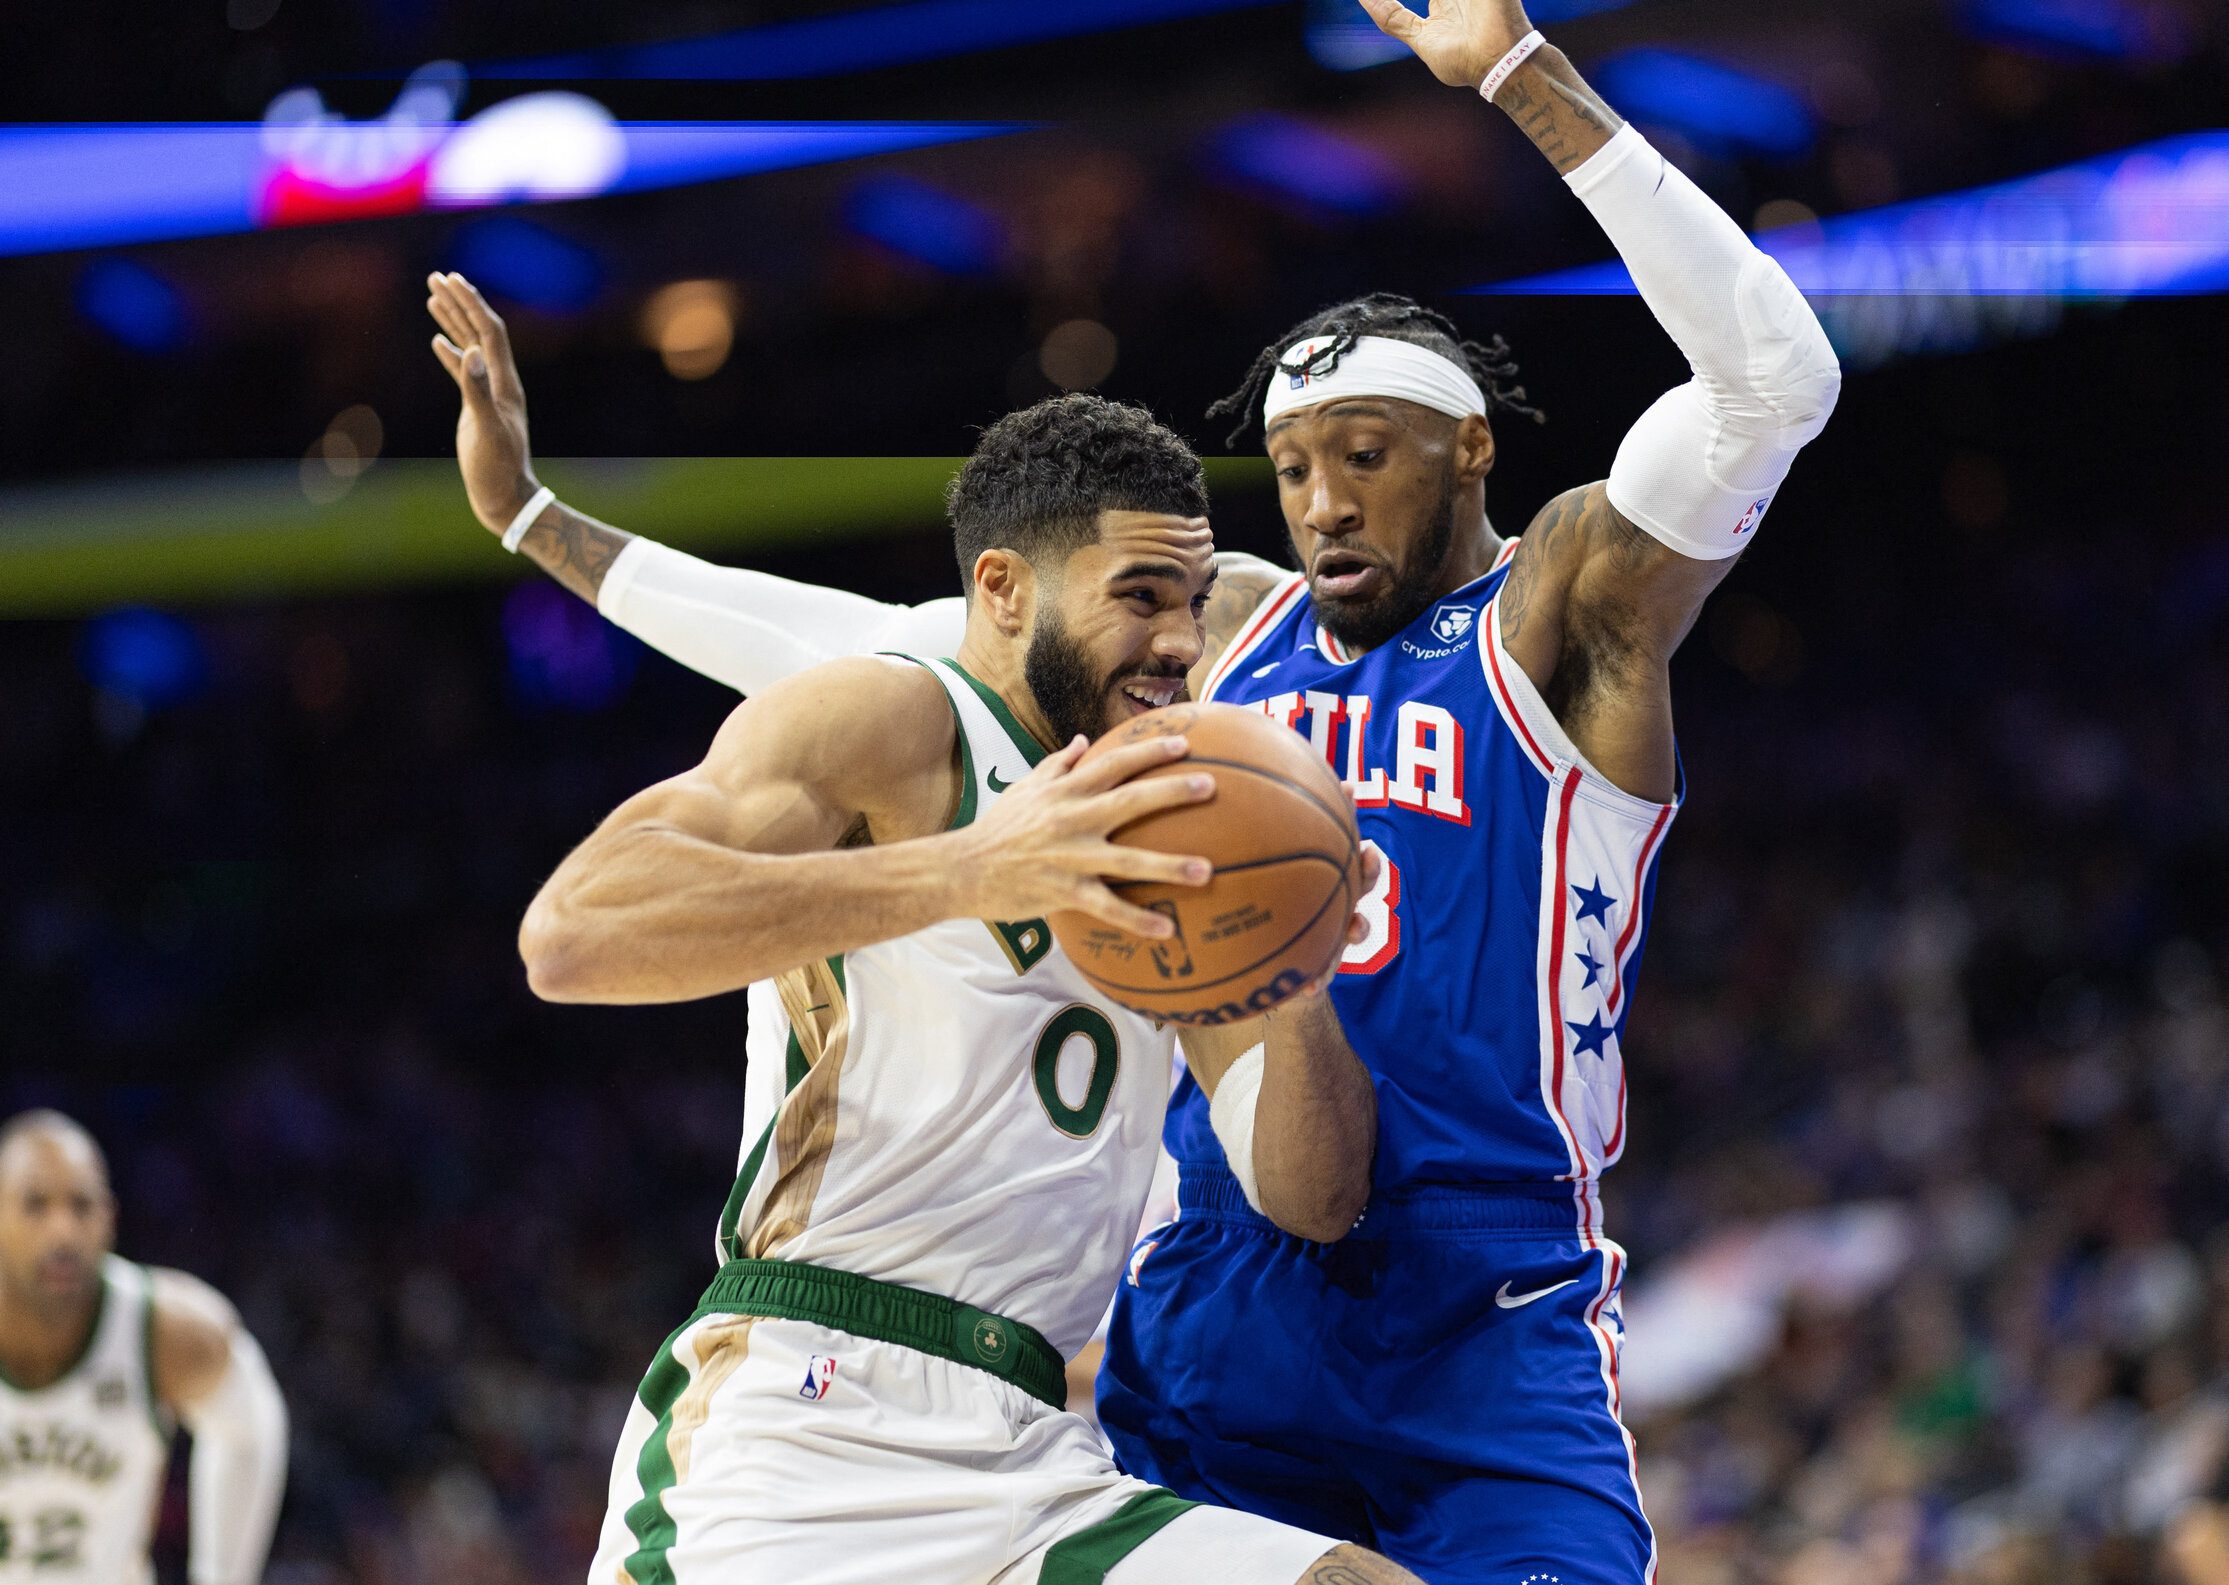 Missing pair of stars, Celtics still sink Sixers